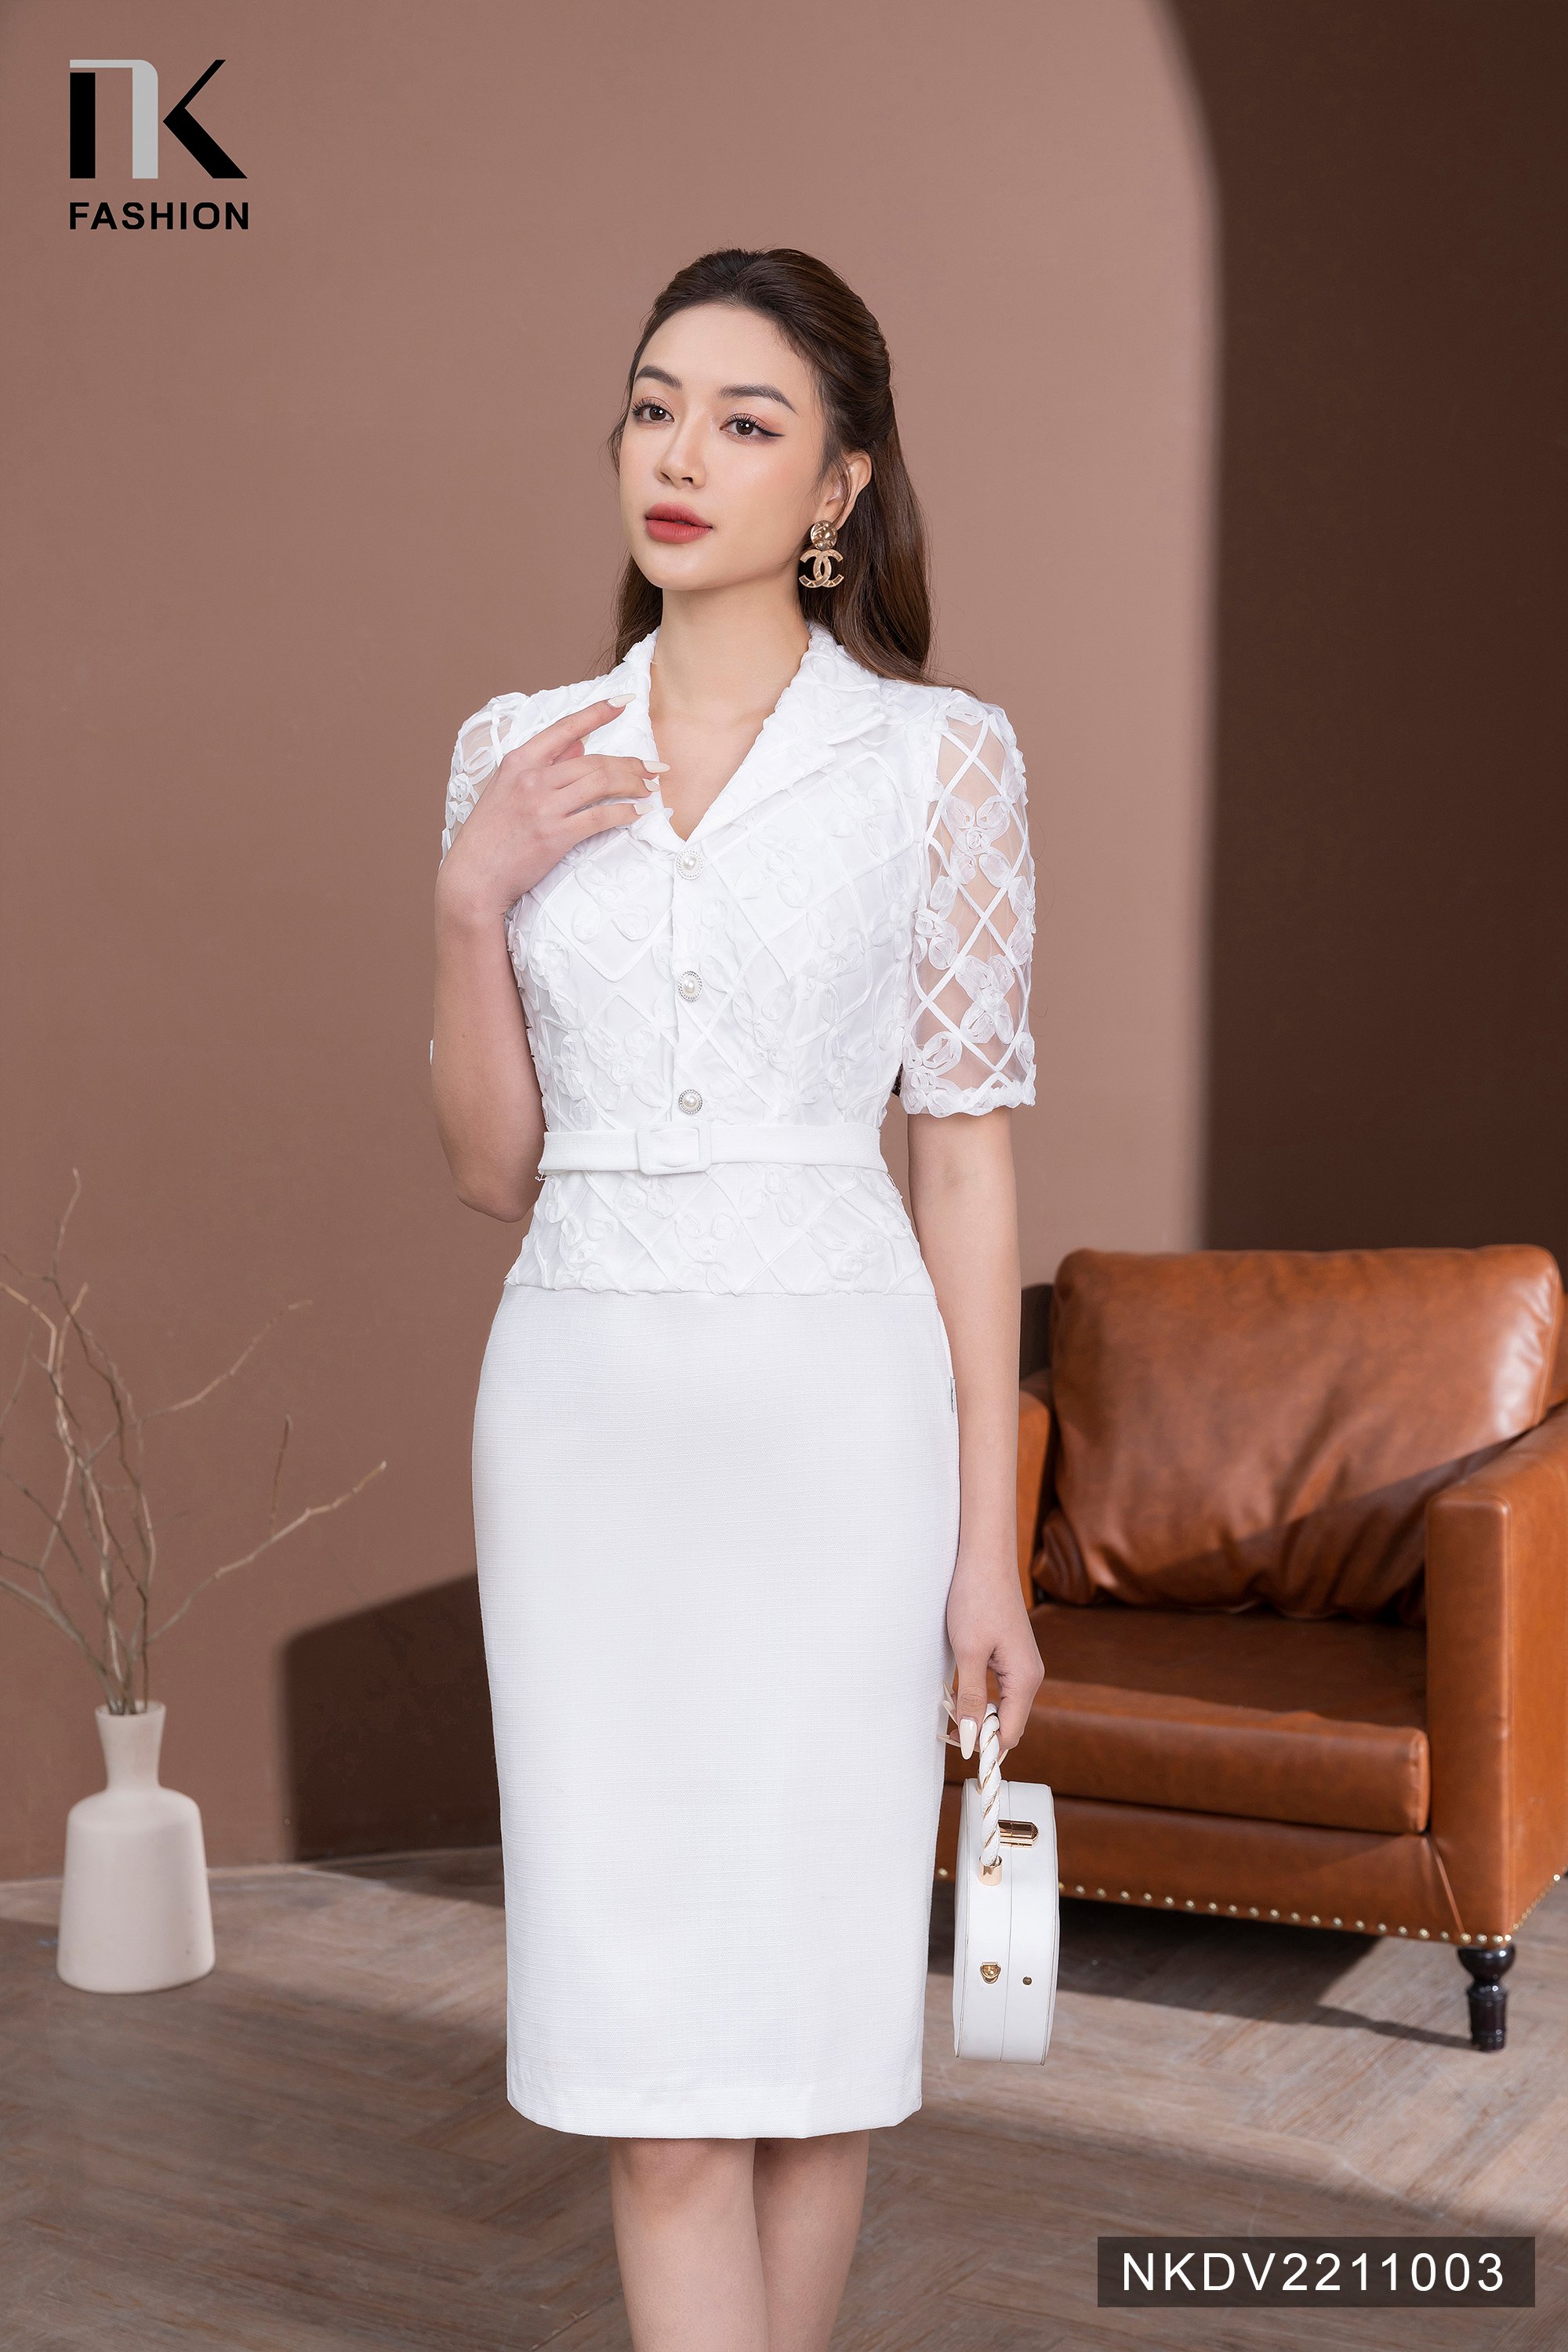 Mới) Mã A6597 Giá 820K: Váy Đầm Liền Thân Nữ Zhout Dáng Ôm Body Gợi Cảm  Sexy Lưới Mỏng Phong Cách Hàn Quốc Kiểu Đuôi Cá Thời Trang Nữ Chất Liệu G03